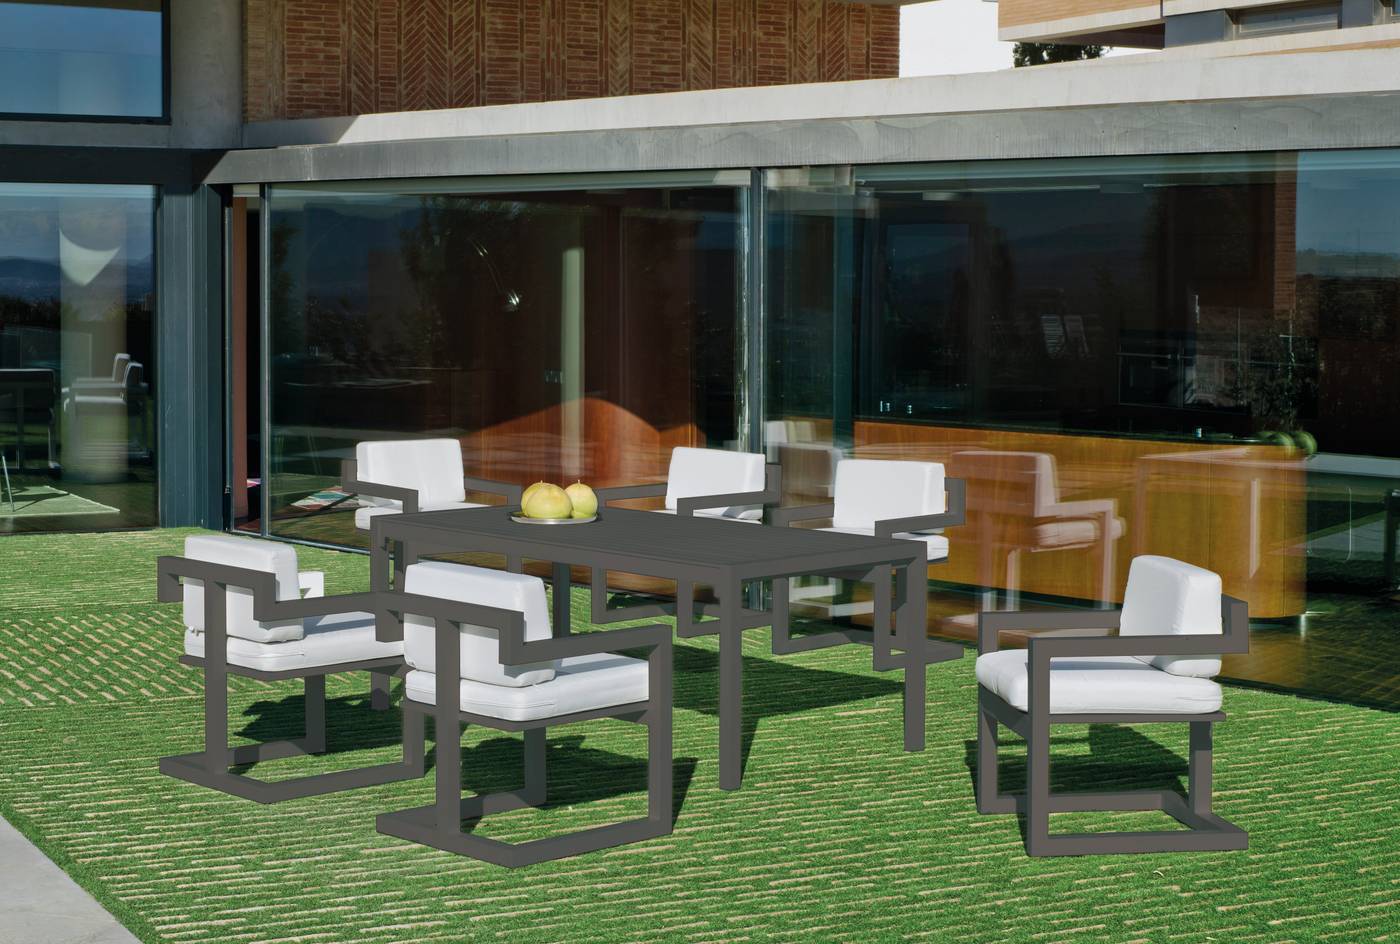 Sillón Aluminio Alhama-30 - Sillón comedor para jardín o terraza. Estructura, asiento y respaldo de aluminio